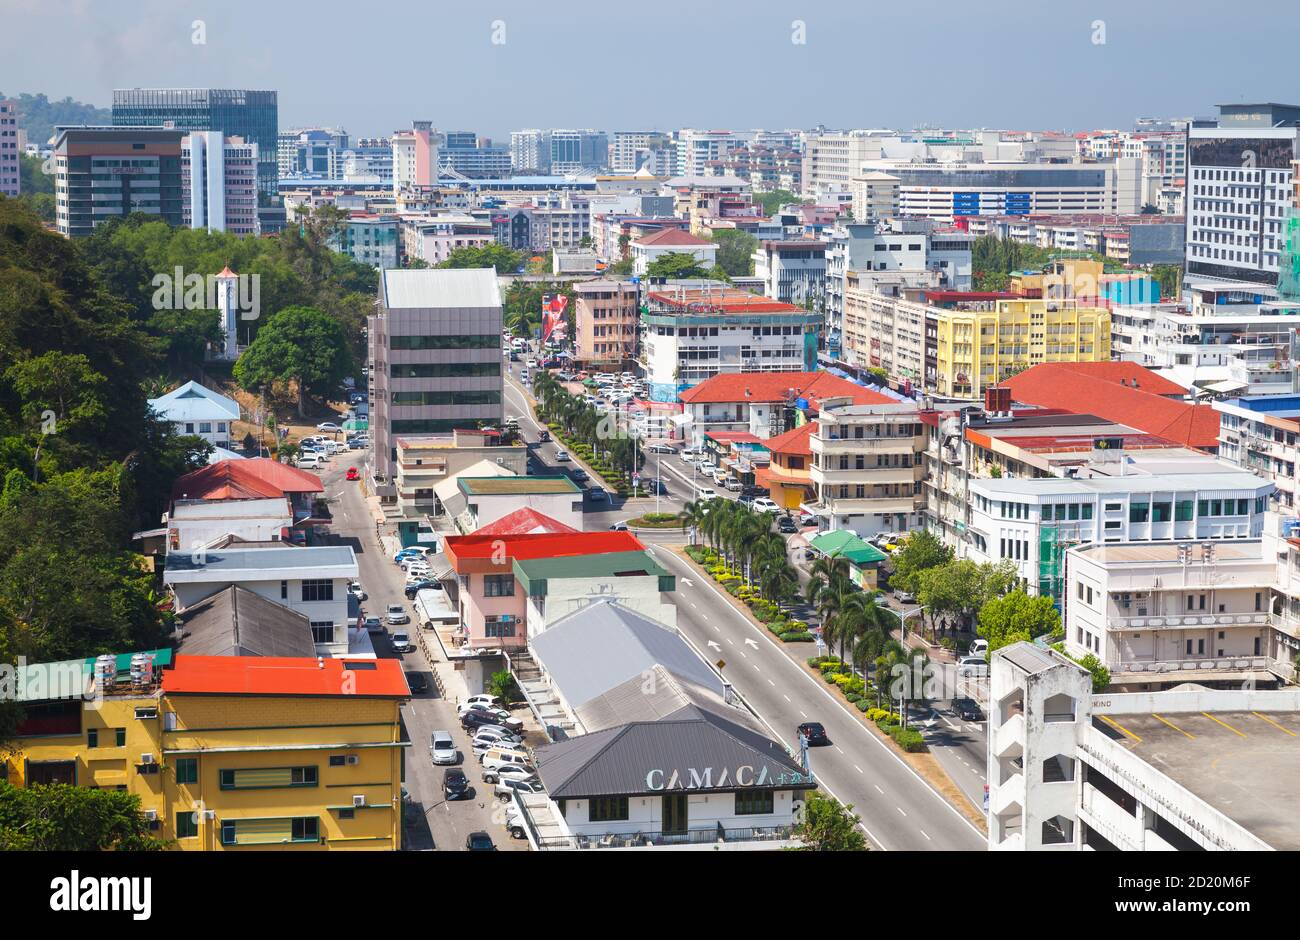 Kota Kinabalu, Malaisie - 17 mars 2019 : quartier central de Kota Kinabalu, paysage urbain aérien avec bâtiments modernes Banque D'Images